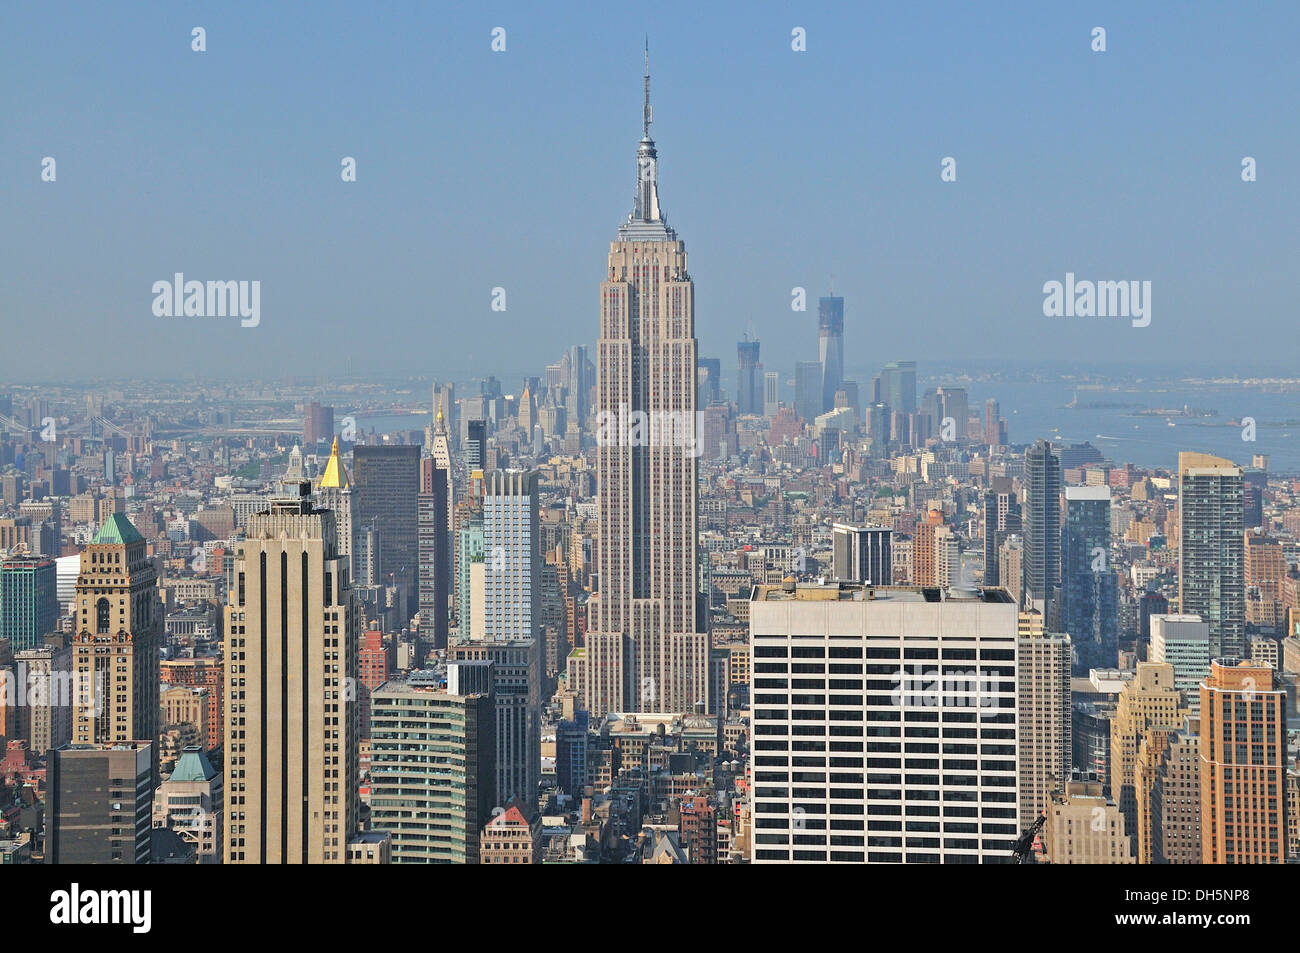 Vista panoramica dalla cima del Rock observation deck al Rockefeller Center dell'Empire State Building al centro Foto Stock